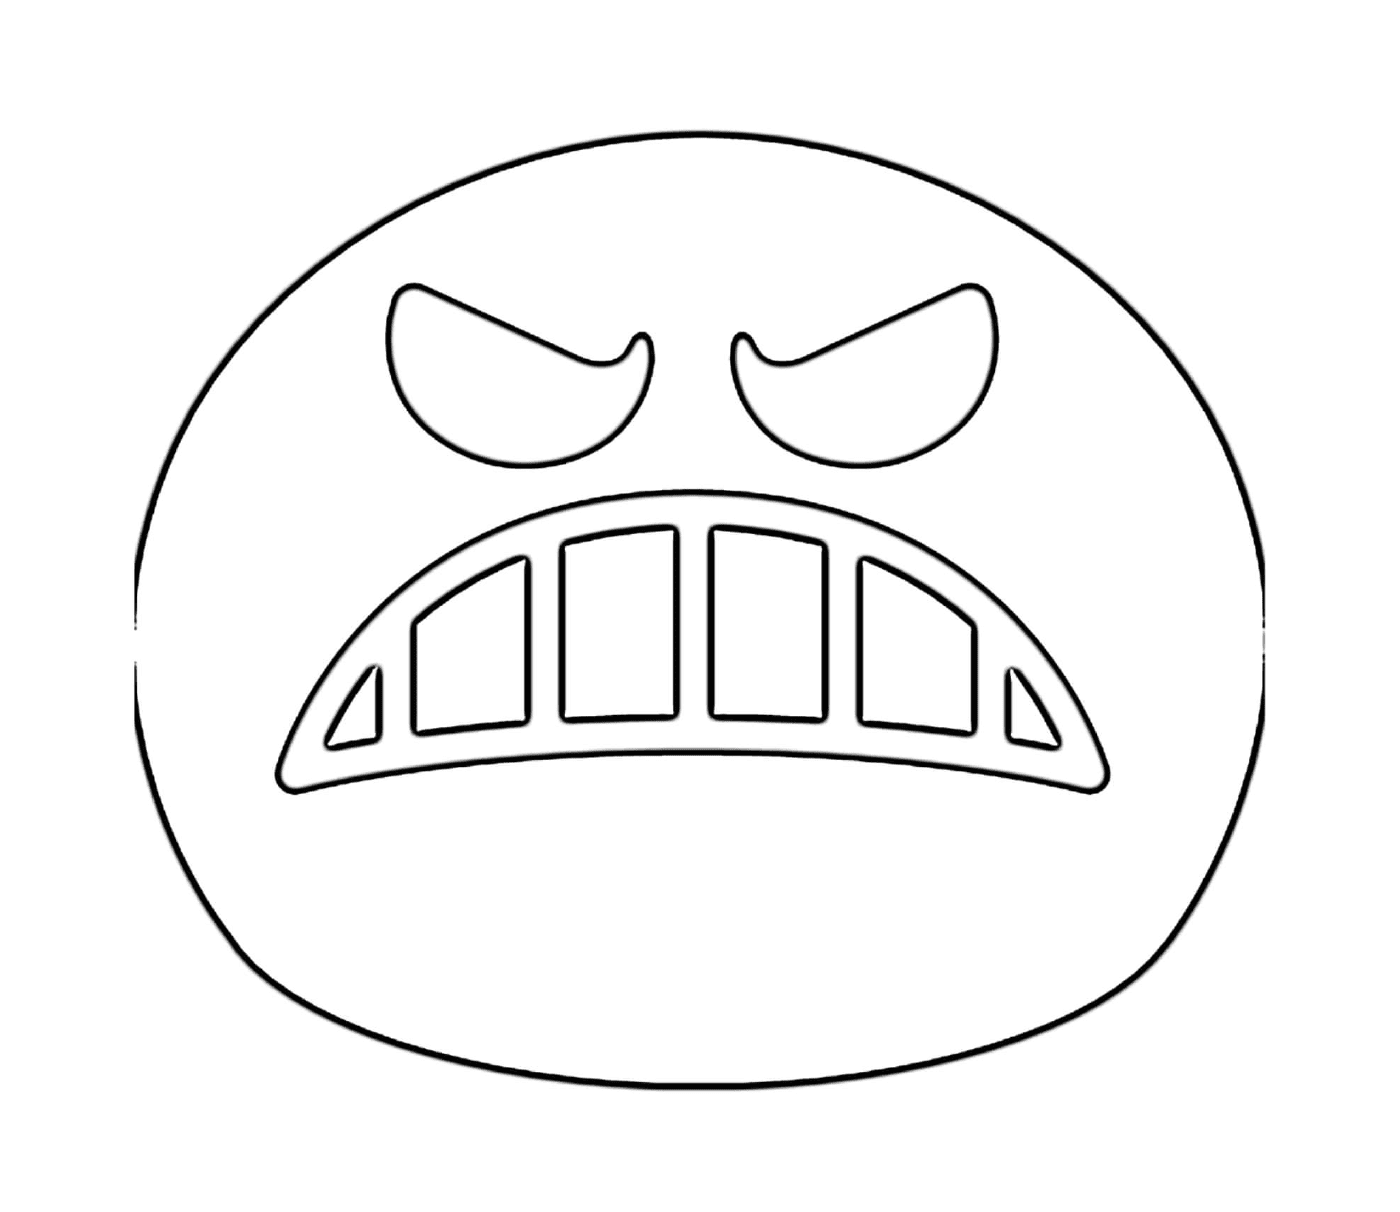  Un rostro enojado está dibujado 